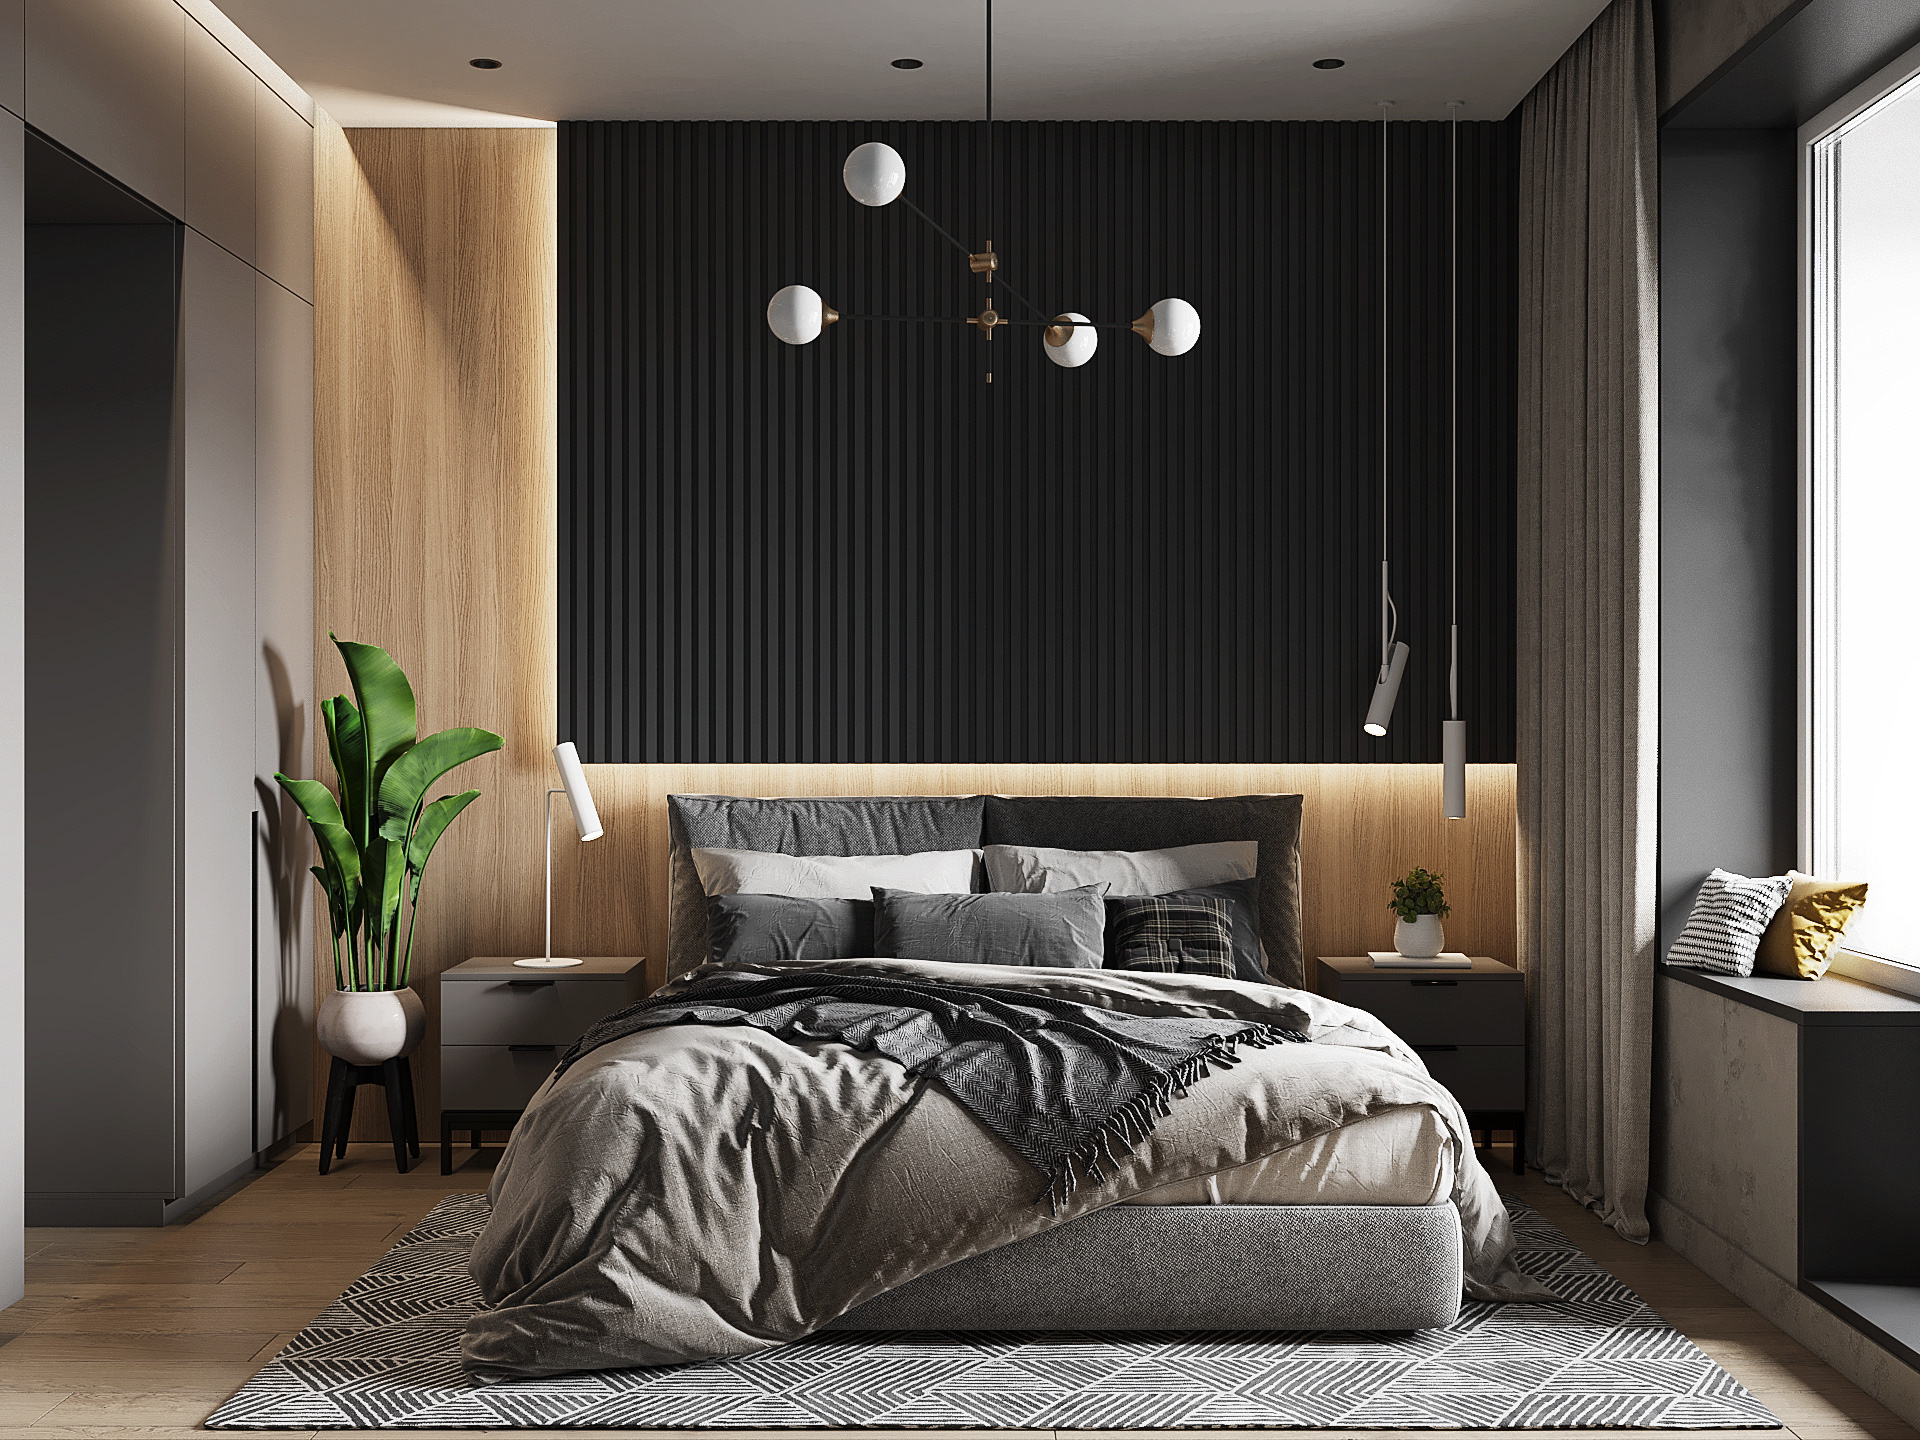  Thiết kế phòng ngủ master hiện đại này có cách tiếp cận thực tế hơn là những sự táo bạo và nhiều sắc màu trong các không gian khác.